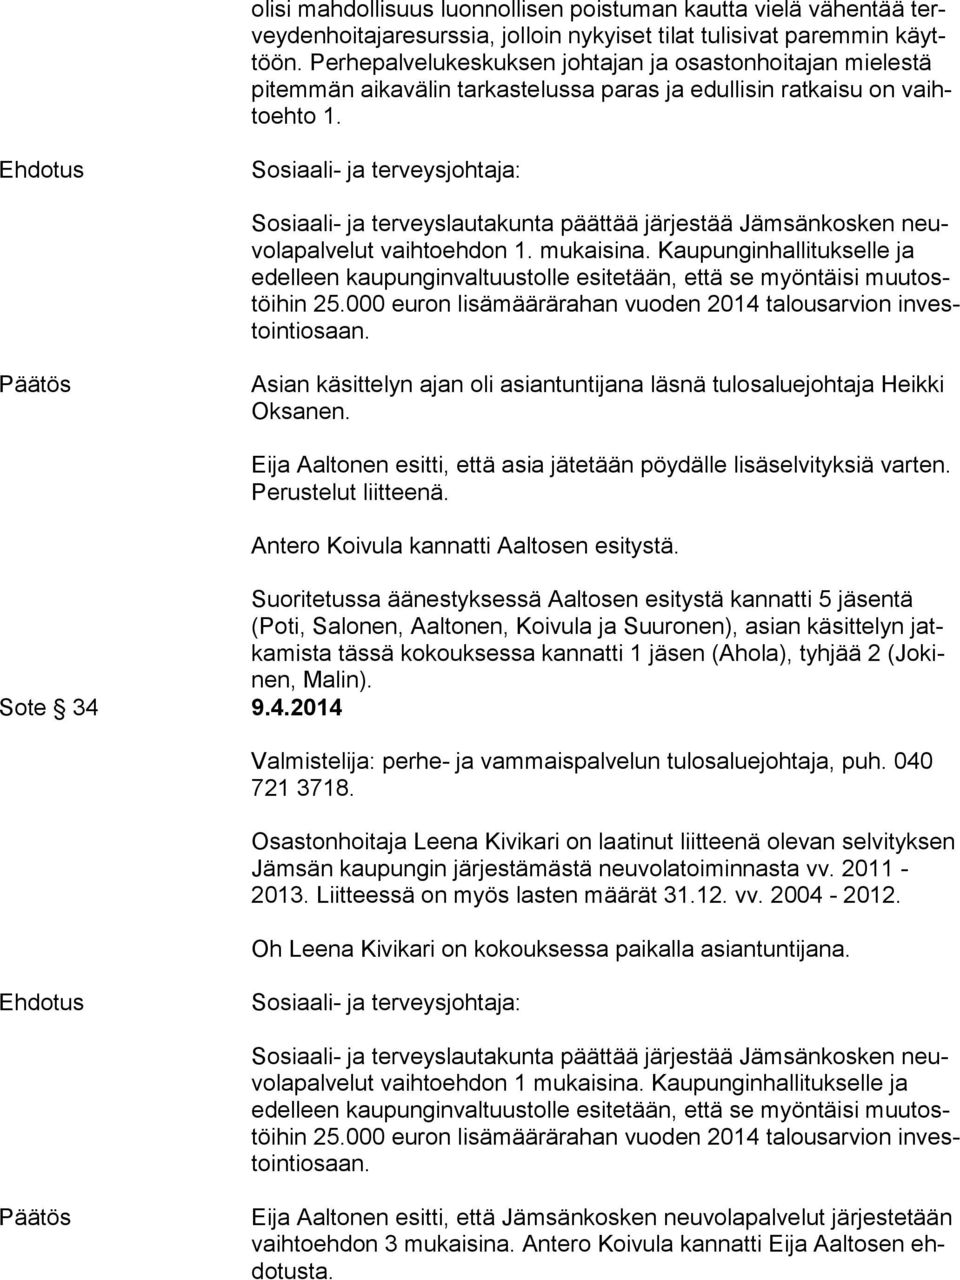 Ehdotus Sosiaali- ja terveysjohtaja: Sosiaali- ja terveyslautakunta päättää järjestää Jämsänkosken neuvo la pal ve lut vaihtoehdon 1. mukaisina.